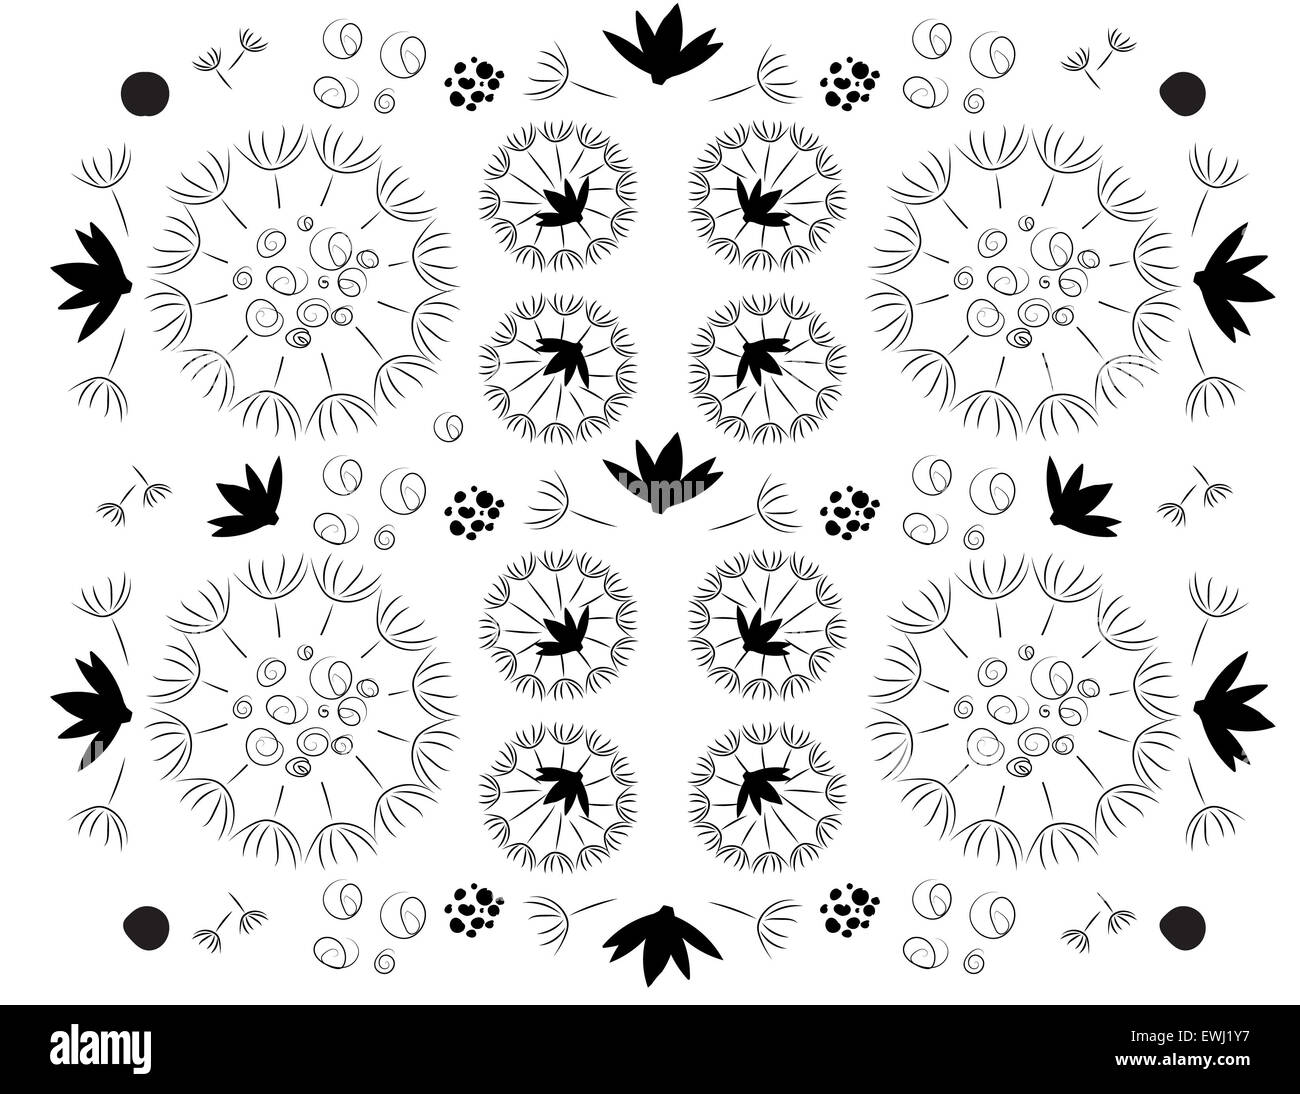 Originale composizione floreale in bianco e nero per decorare tutti i tuoi spazi Foto Stock